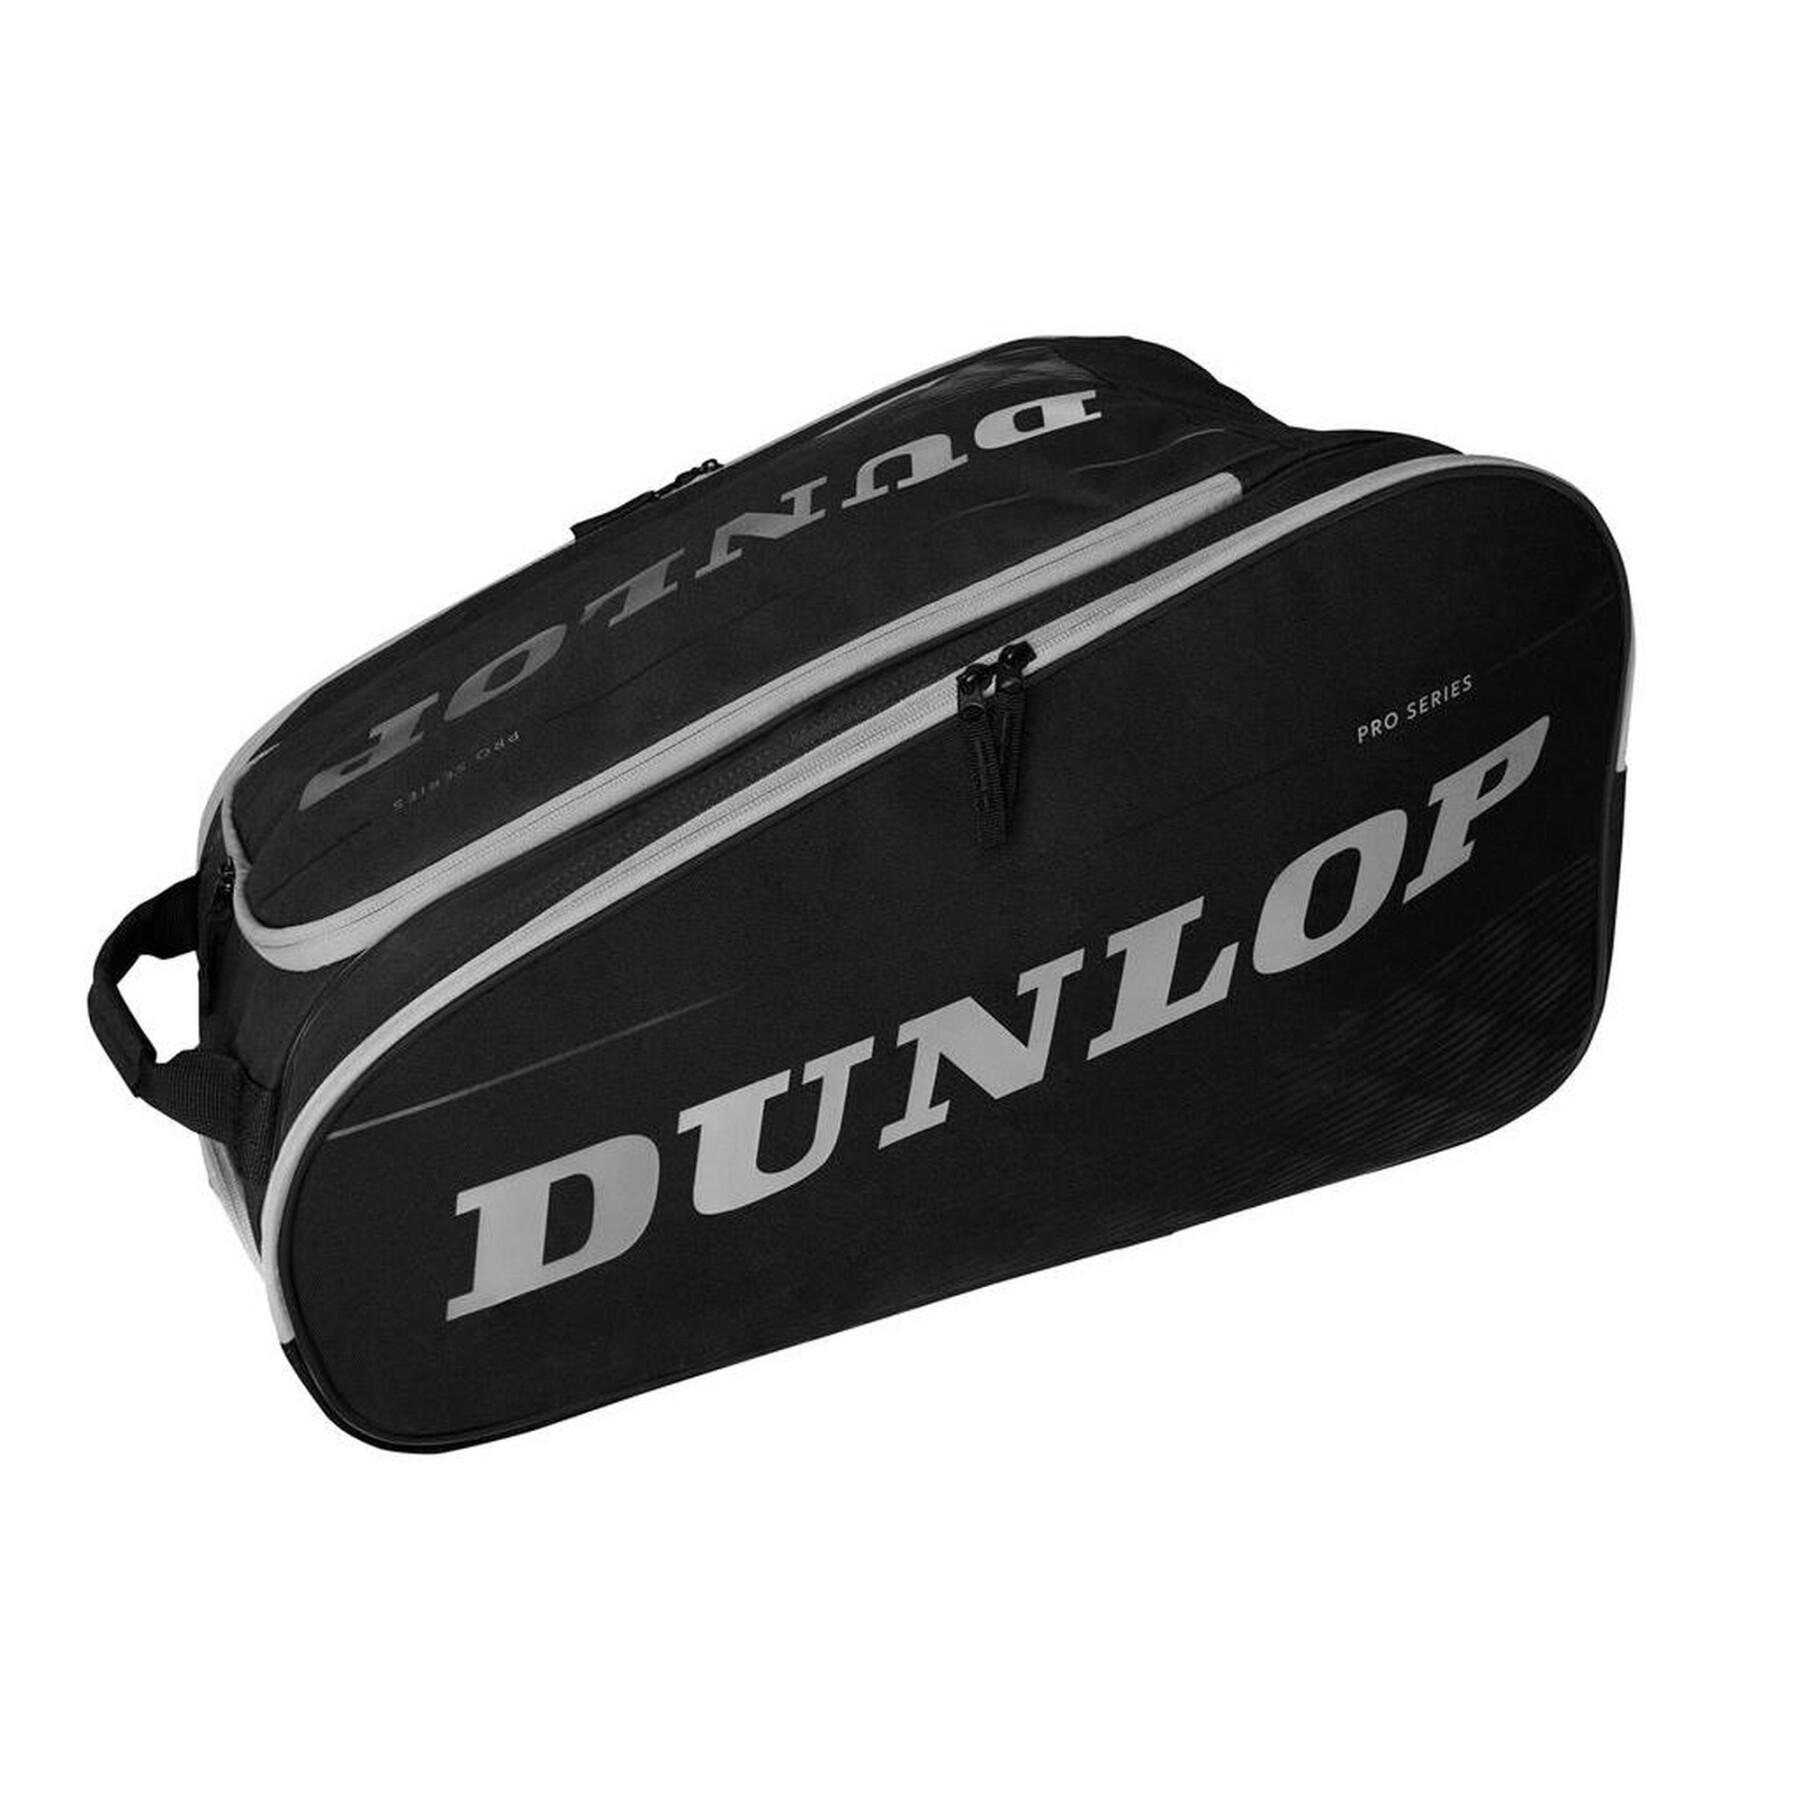 Racket bag from padel Dunlop Paletero Pro Series